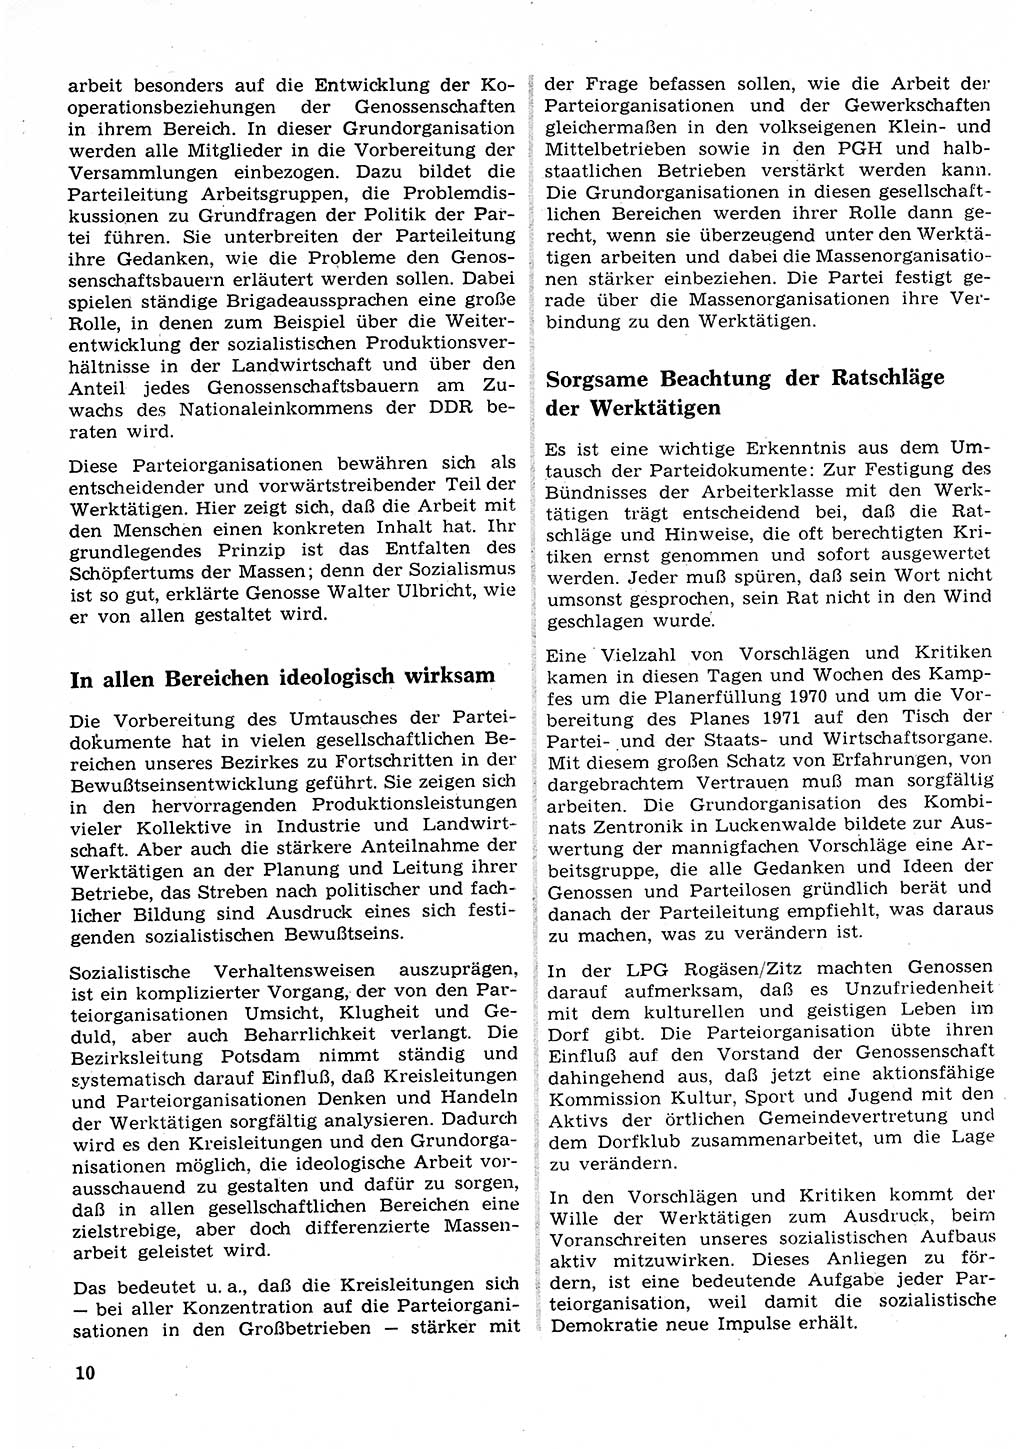 Neuer Weg (NW), Organ des Zentralkomitees (ZK) der SED (Sozialistische Einheitspartei Deutschlands) für Fragen des Parteilebens, 26. Jahrgang [Deutsche Demokratische Republik (DDR)] 1971, Seite 10 (NW ZK SED DDR 1971, S. 10)